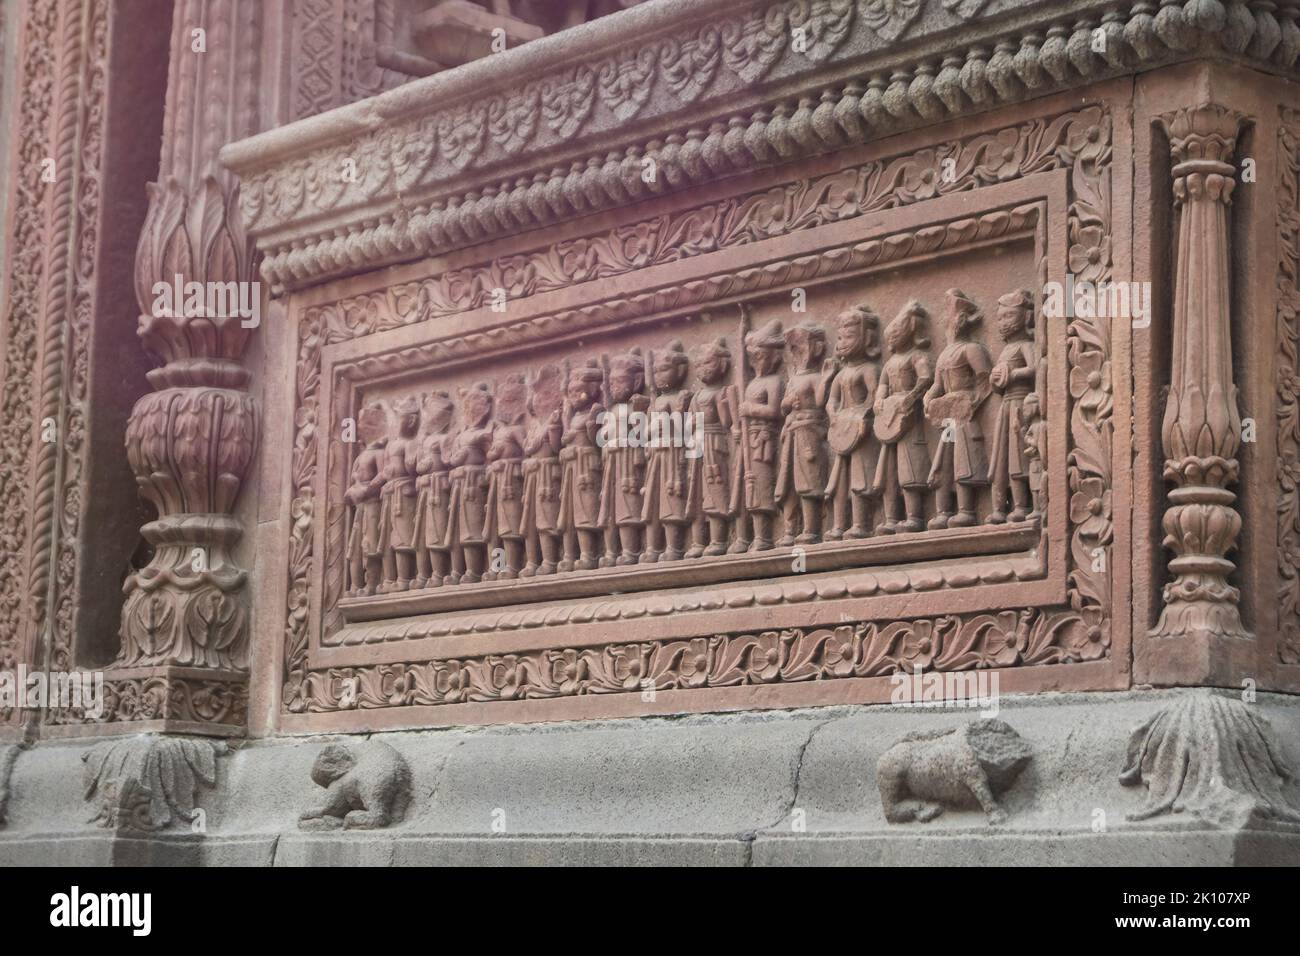 Dekorative Wandskulpturen von Boliya Sarkar KI Chhatri, Indore, Madhya Pradesh. Auch bekannt als Malhar Rao Chhatri. Indische Architektur. Uralter archit Stockfoto